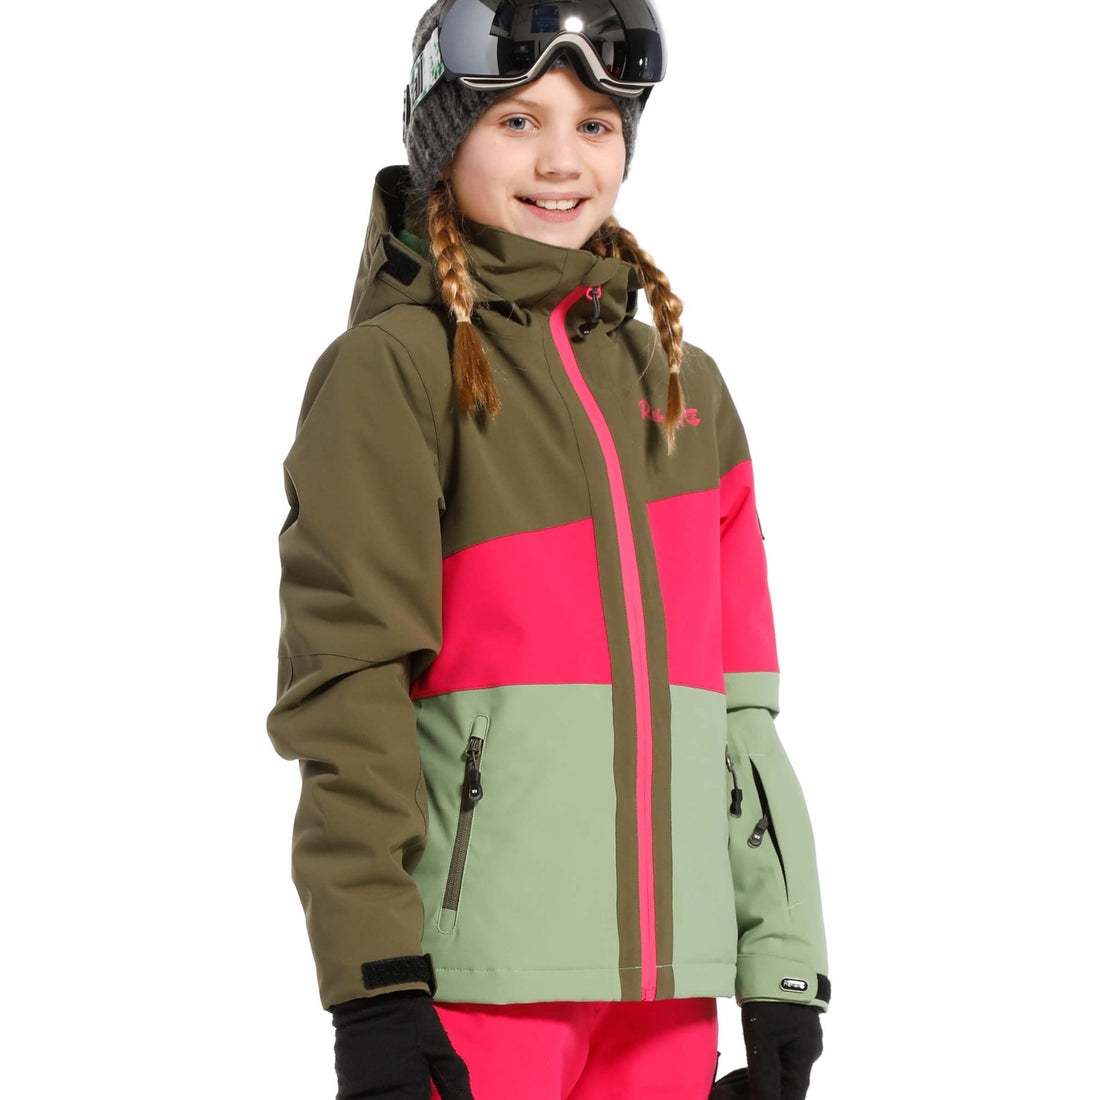 Rehall - RICKY-R-jr. - Girls Snowjacket - World of Alps